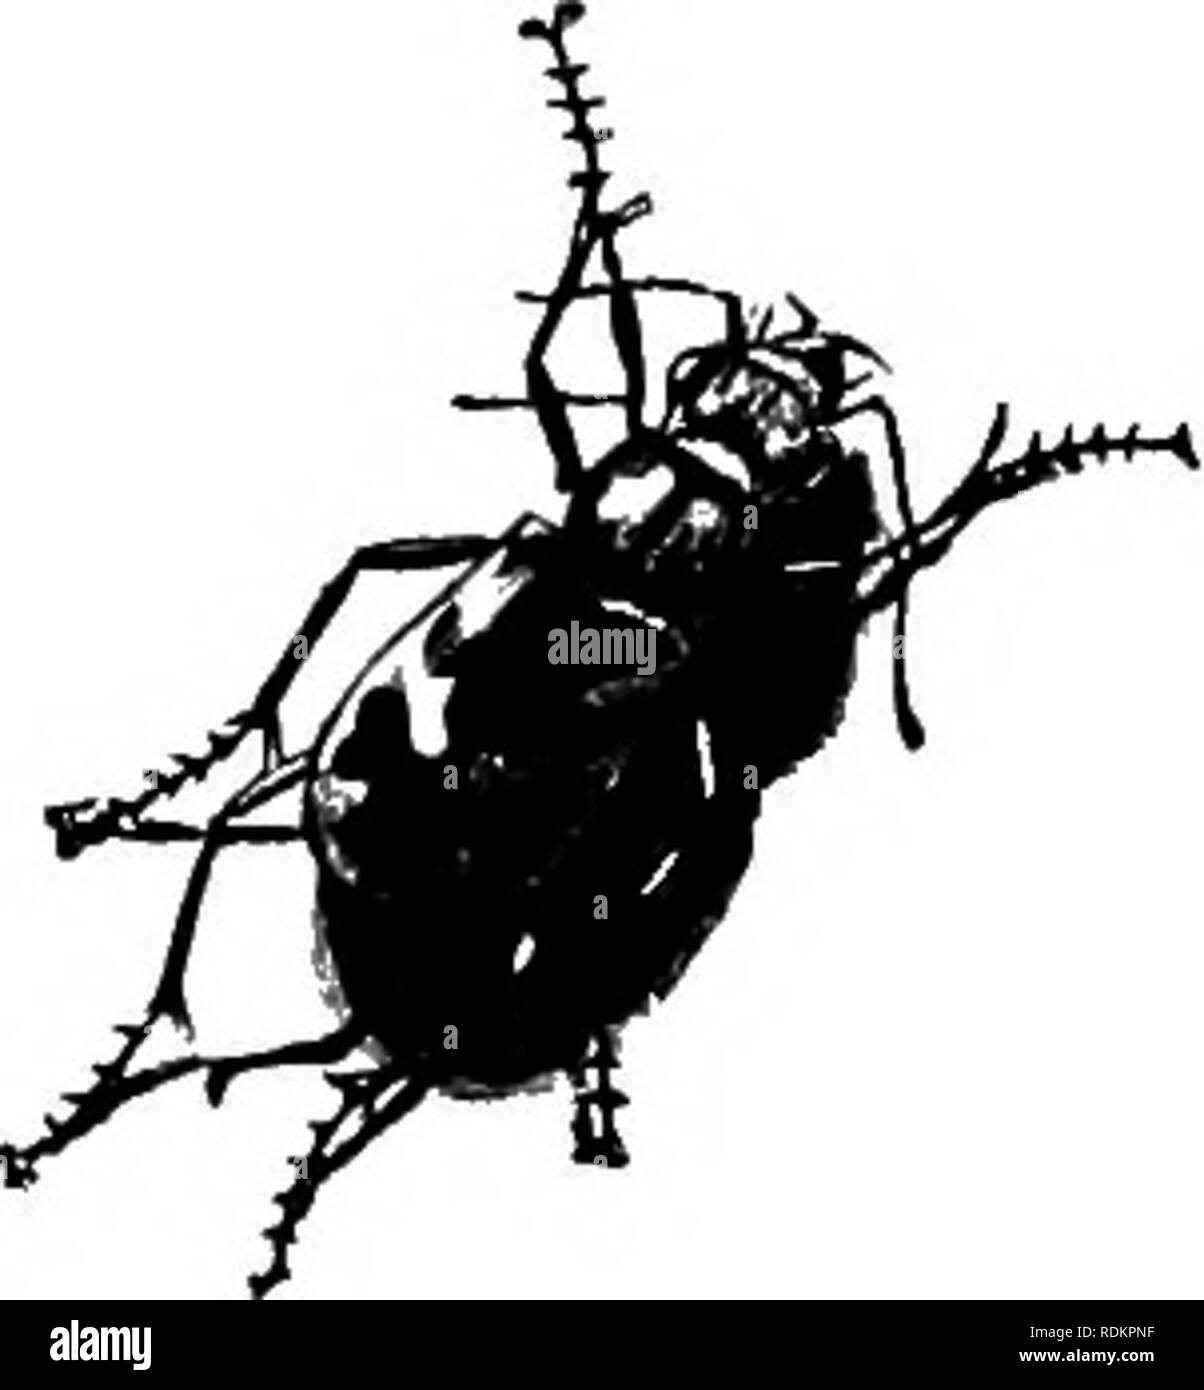 . Mon studio voisins. L'histoire naturelle. 68 MON STUDIO VOISINS être transfiguré-a-hued métallique brillant, clignotant peut-être avec l'or bronze étincelant ou comme une émeraude-la belle cicindela, ou tiger- beetle, connu de l'entomologiste le plus agile que parmi la tribu de coléoptères ailés ; connus de la population, peut-être, simplement comme un scintillement lumineux qui se délecte de mouche dans le bain somme- mer les sables du bord de la mer ou route de campagne poussiéreuse, faisant de sa courte portées de vol de l'étincelant pieds très de l'observateur. Si nous saisir l'un d'eux avec notre papillon-net il sera trouvé pour porter un Banque D'Images